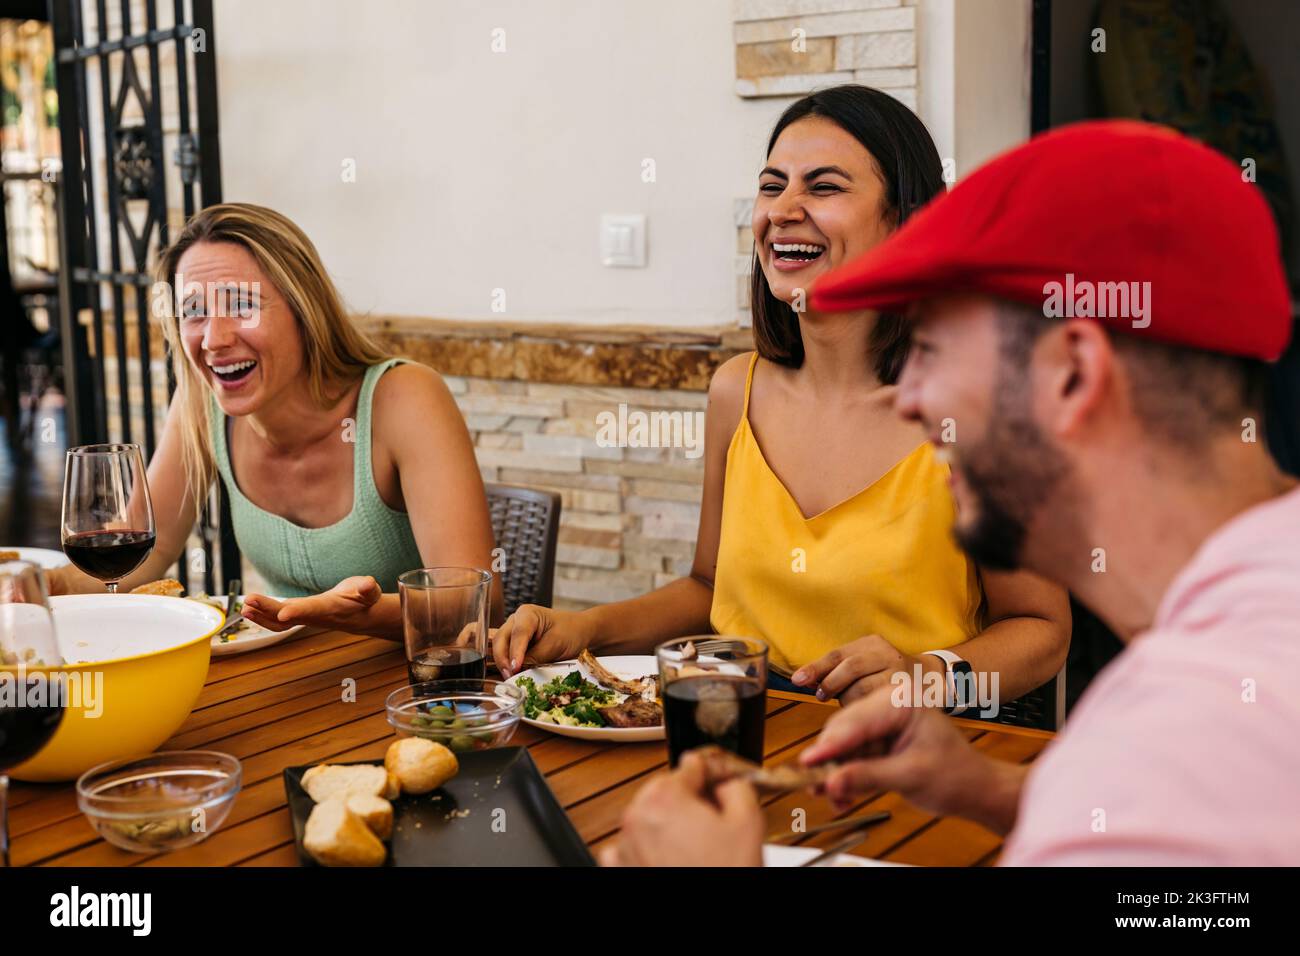 Ein brünette Mädchen und ein blondes Mädchen lachen, während sie mit einigen Freunden ein Essen feiern Stockfoto